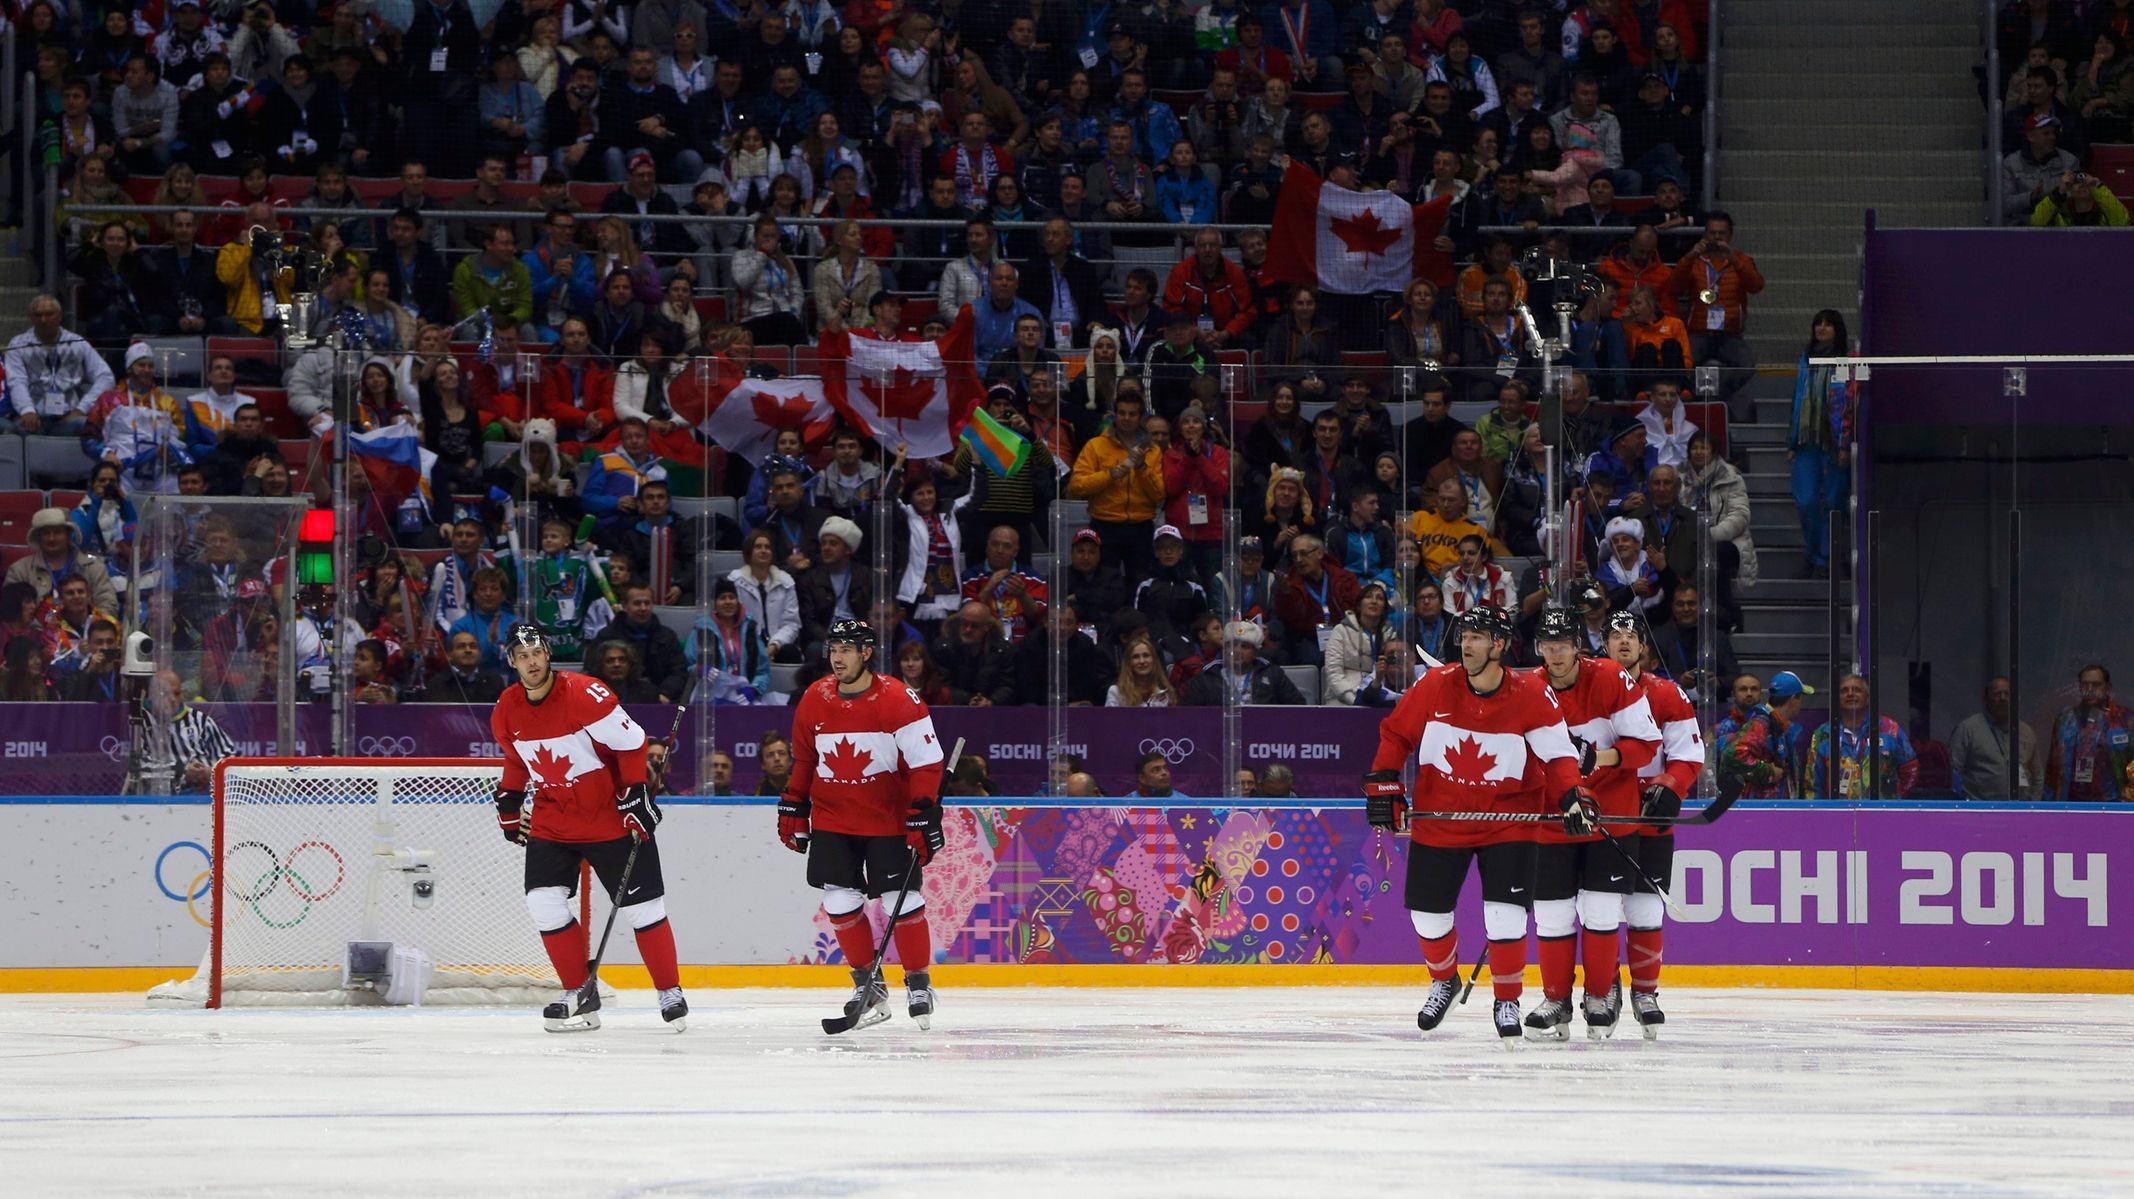 Kanada - Norsko: Kanaďané slaví gól Drewa Doughtyho